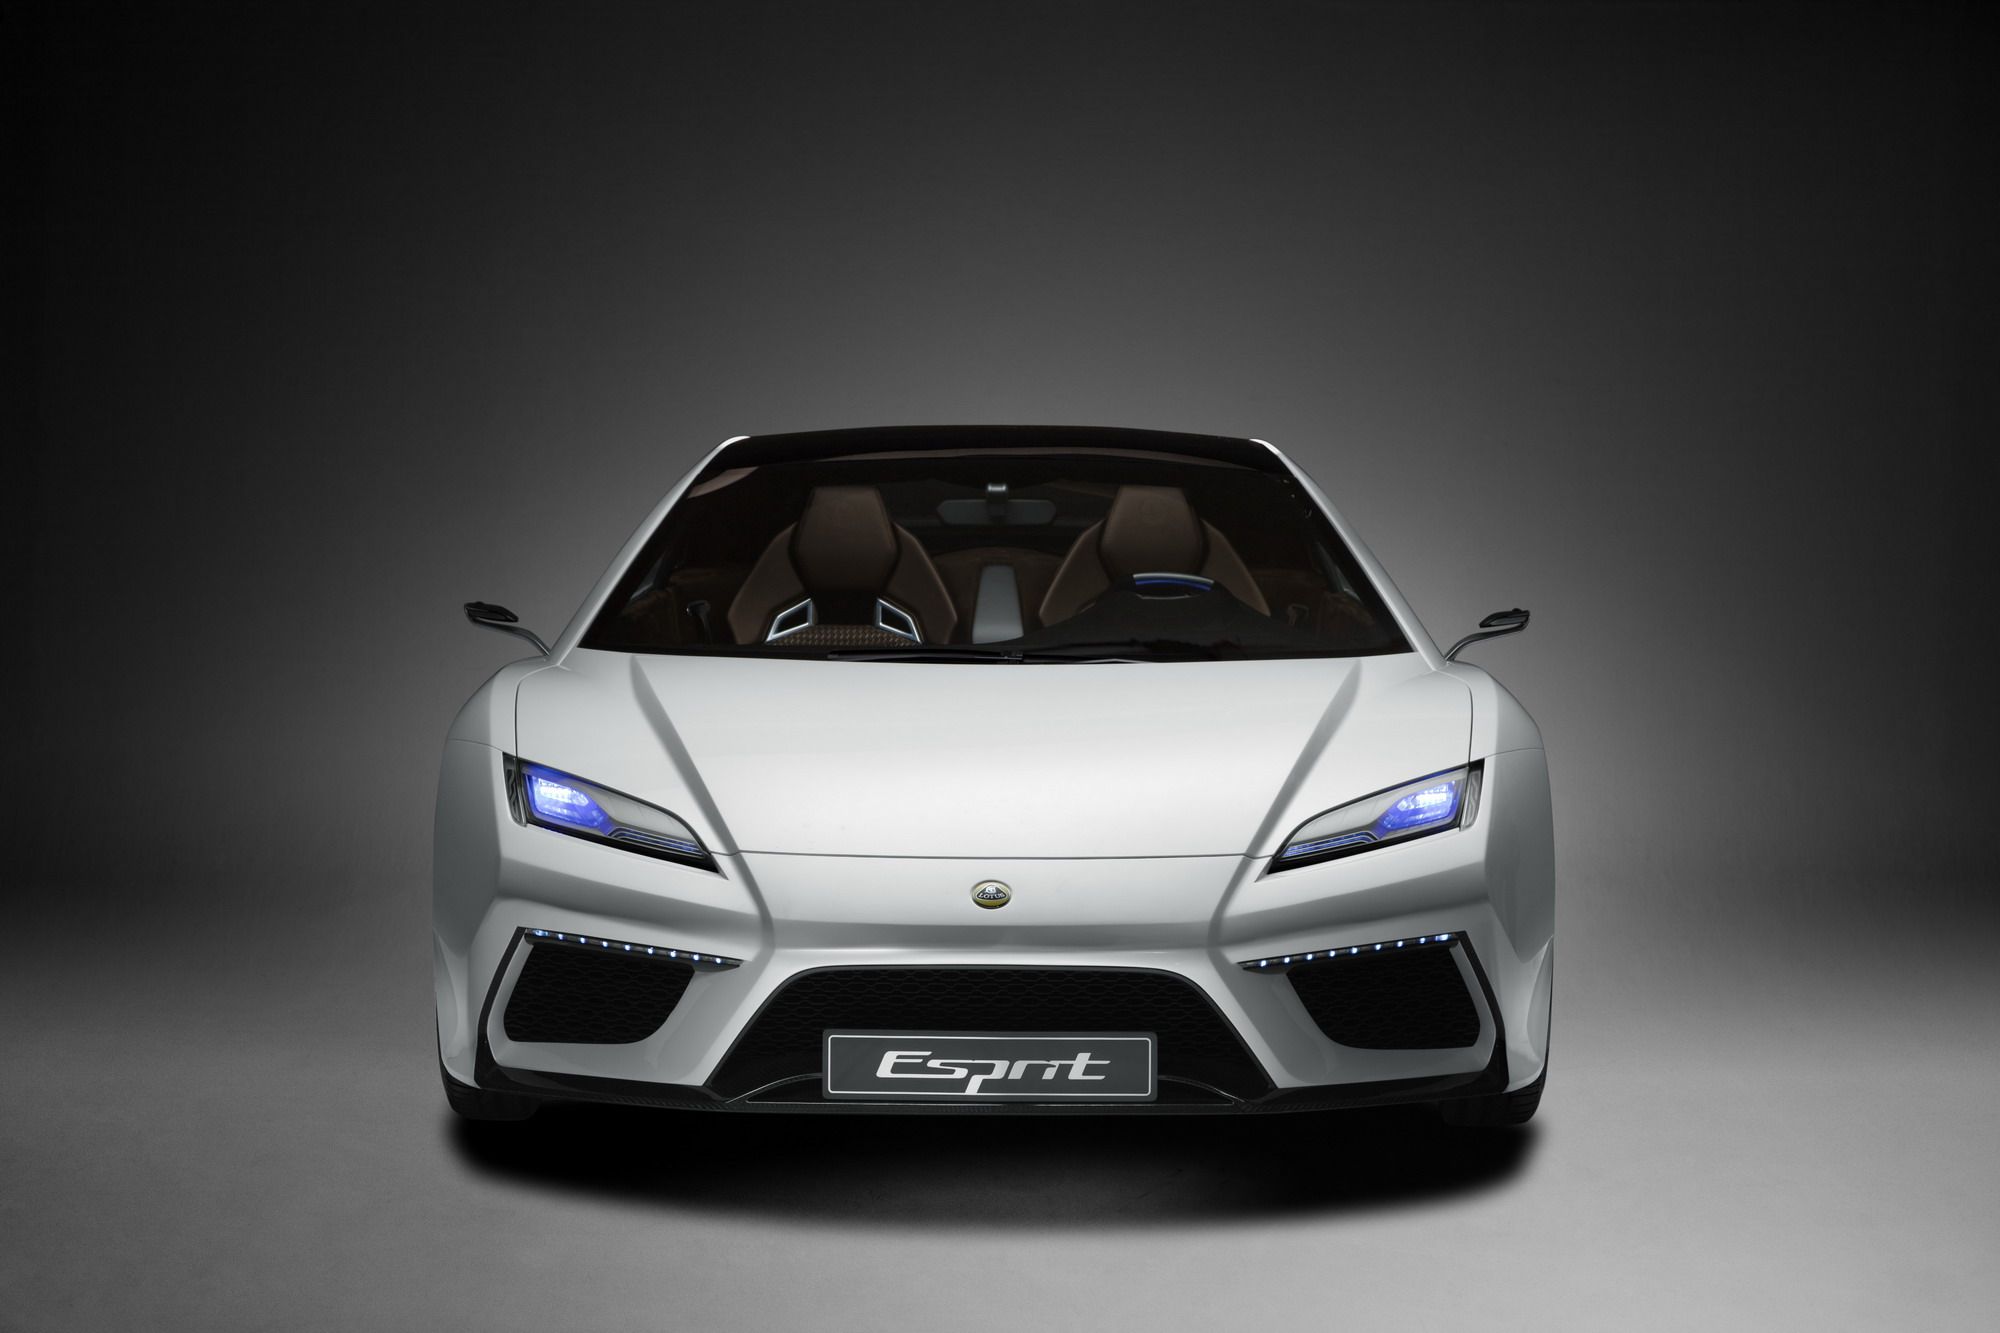 2014 Lotus Esprit